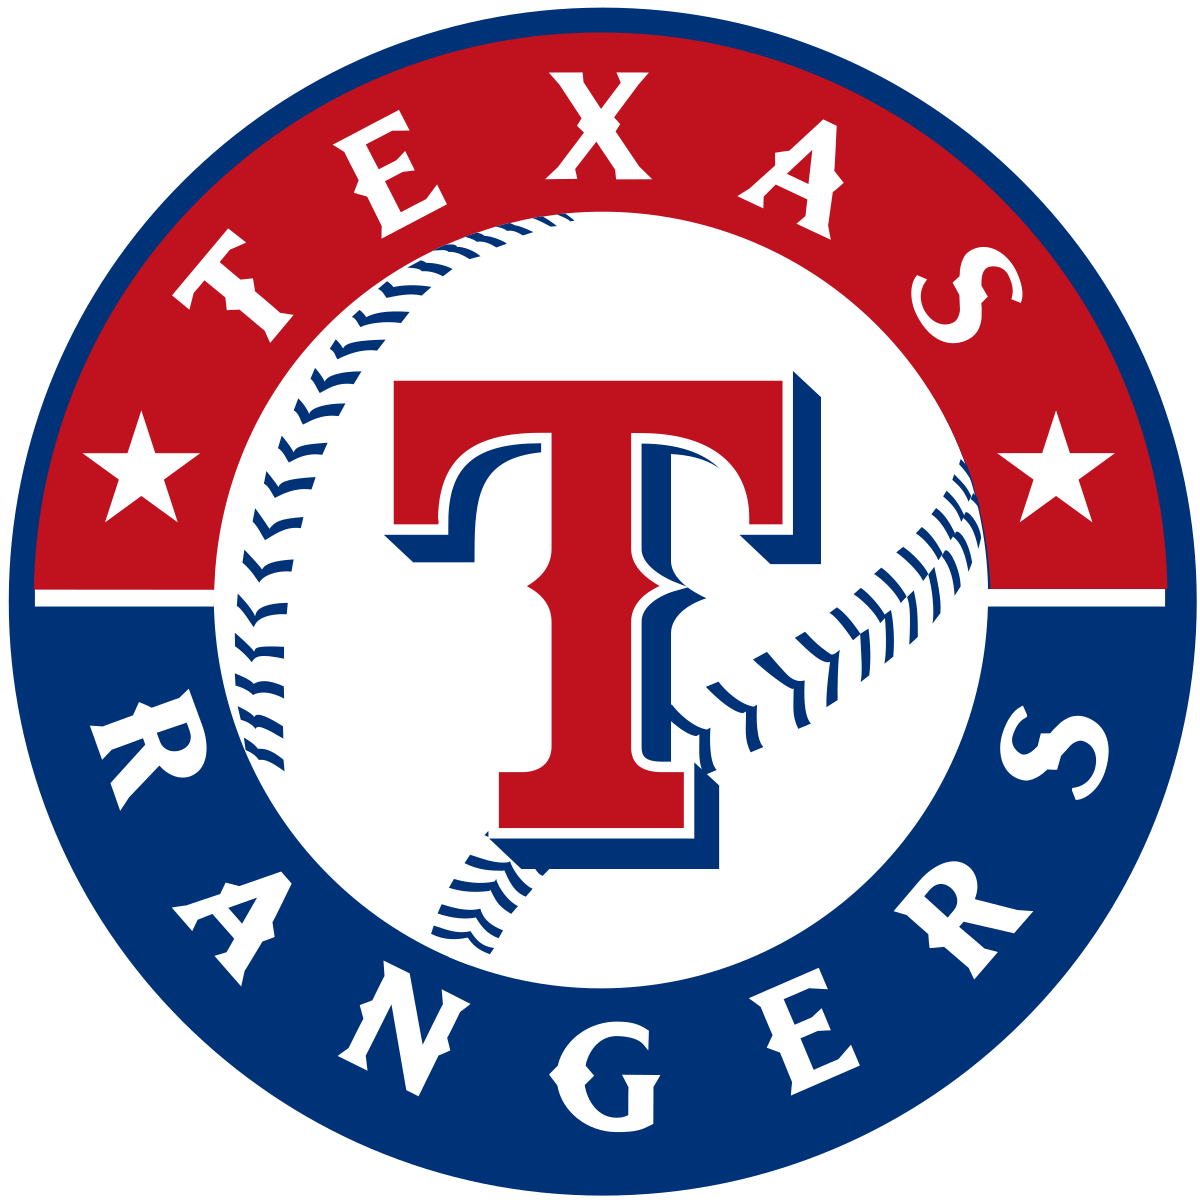 Red White Blue Baseball Logo - Texas Rangers (baseball)